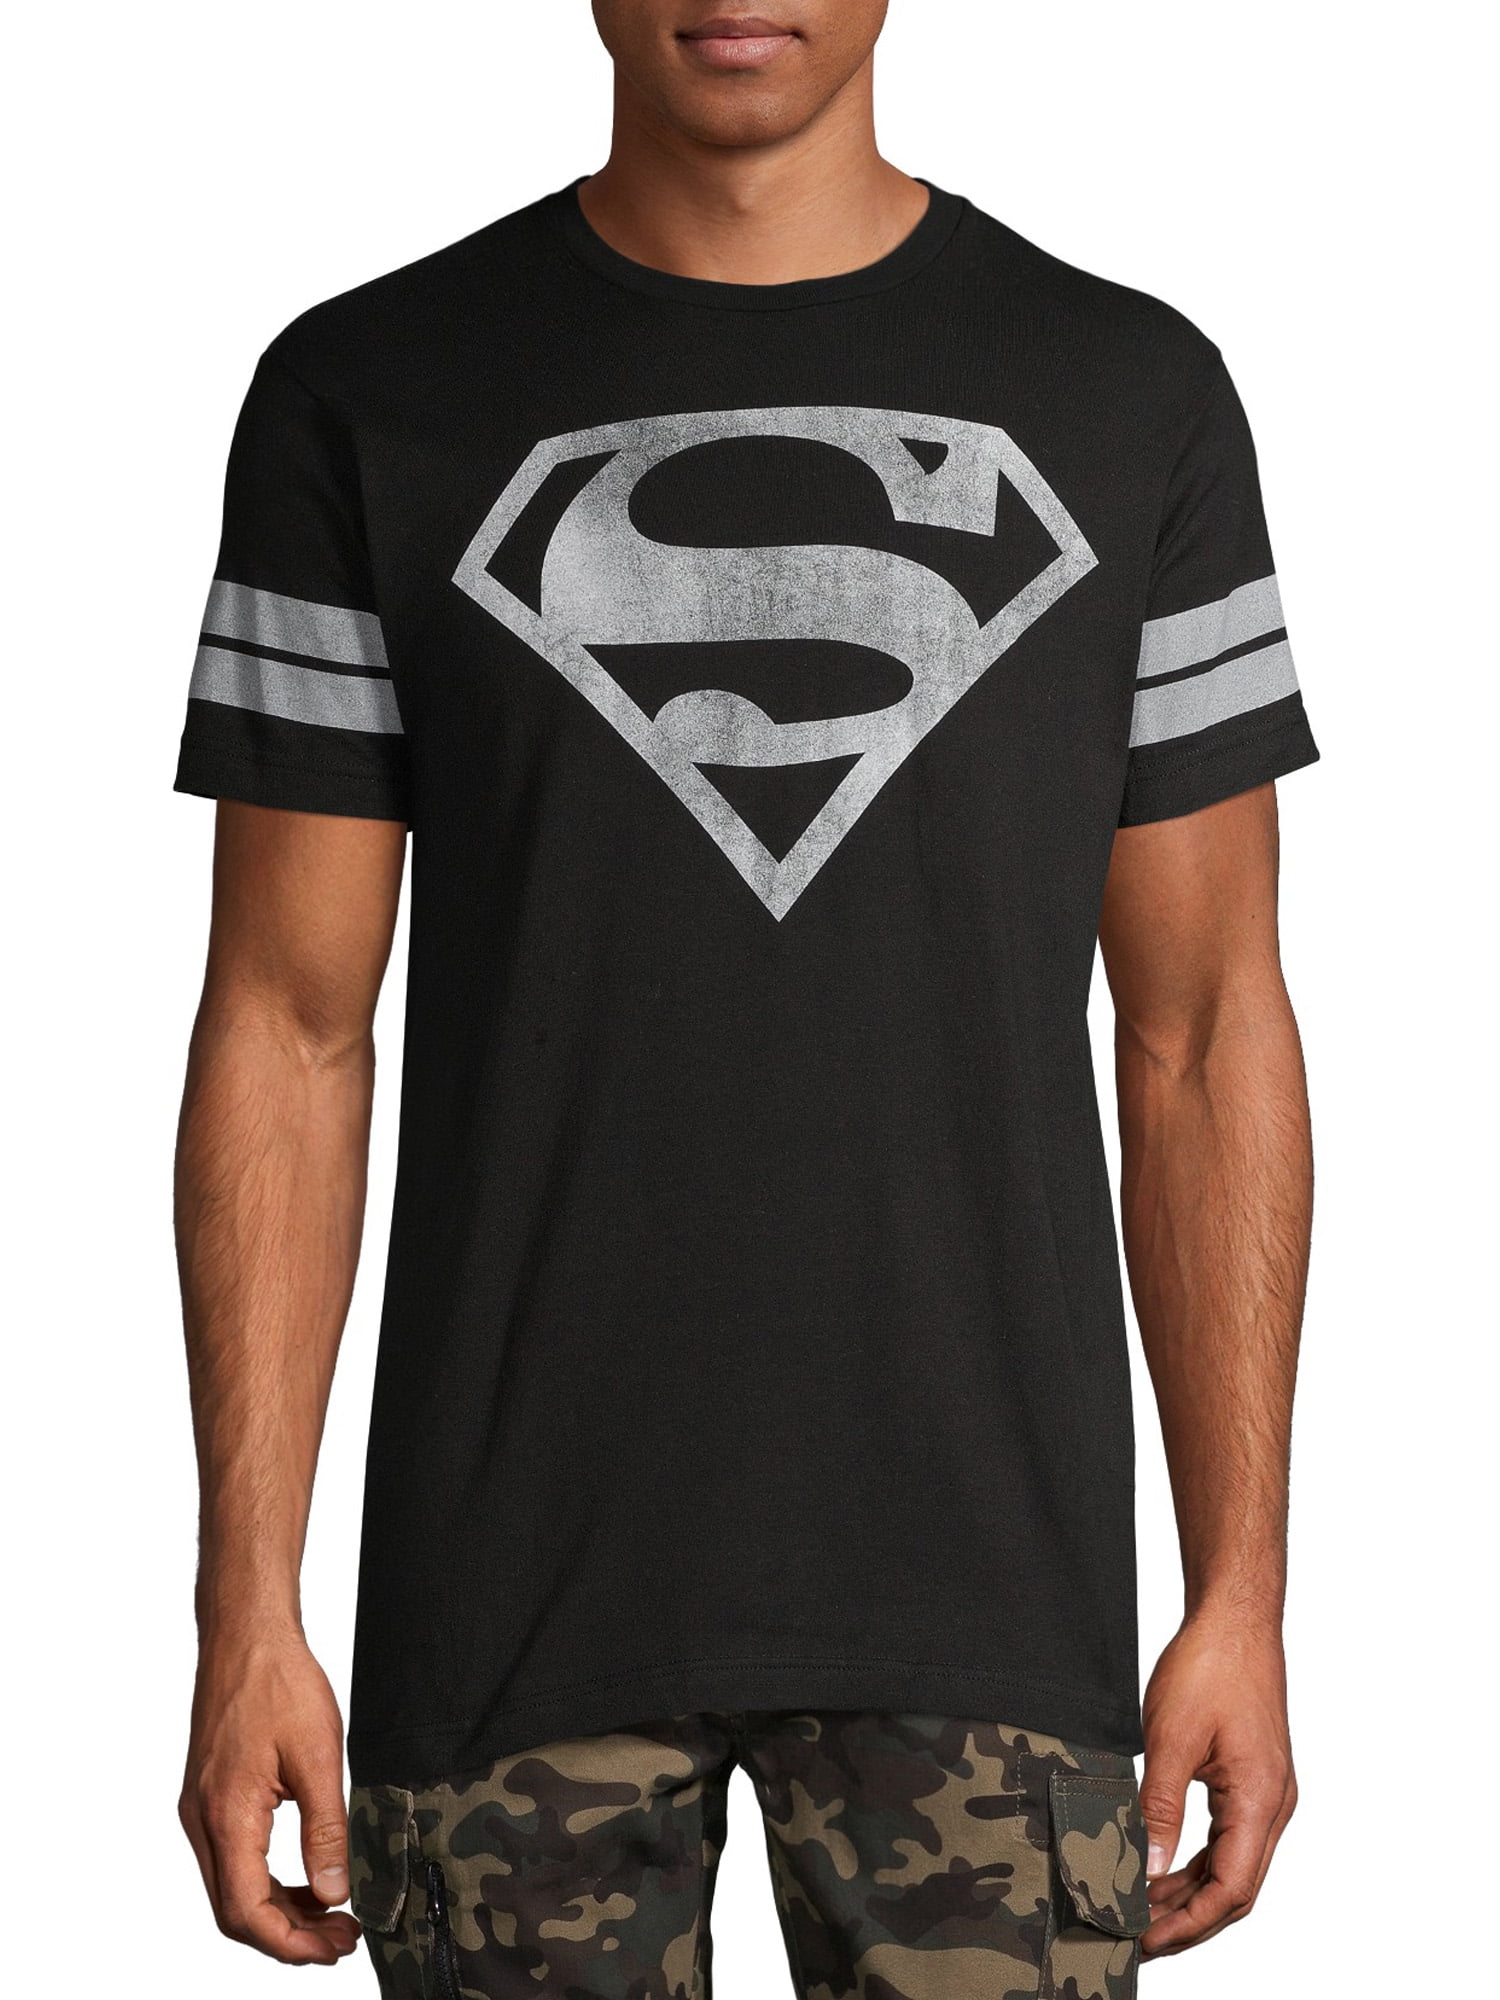 S Sheild Rough T-Shirt Size S Superman